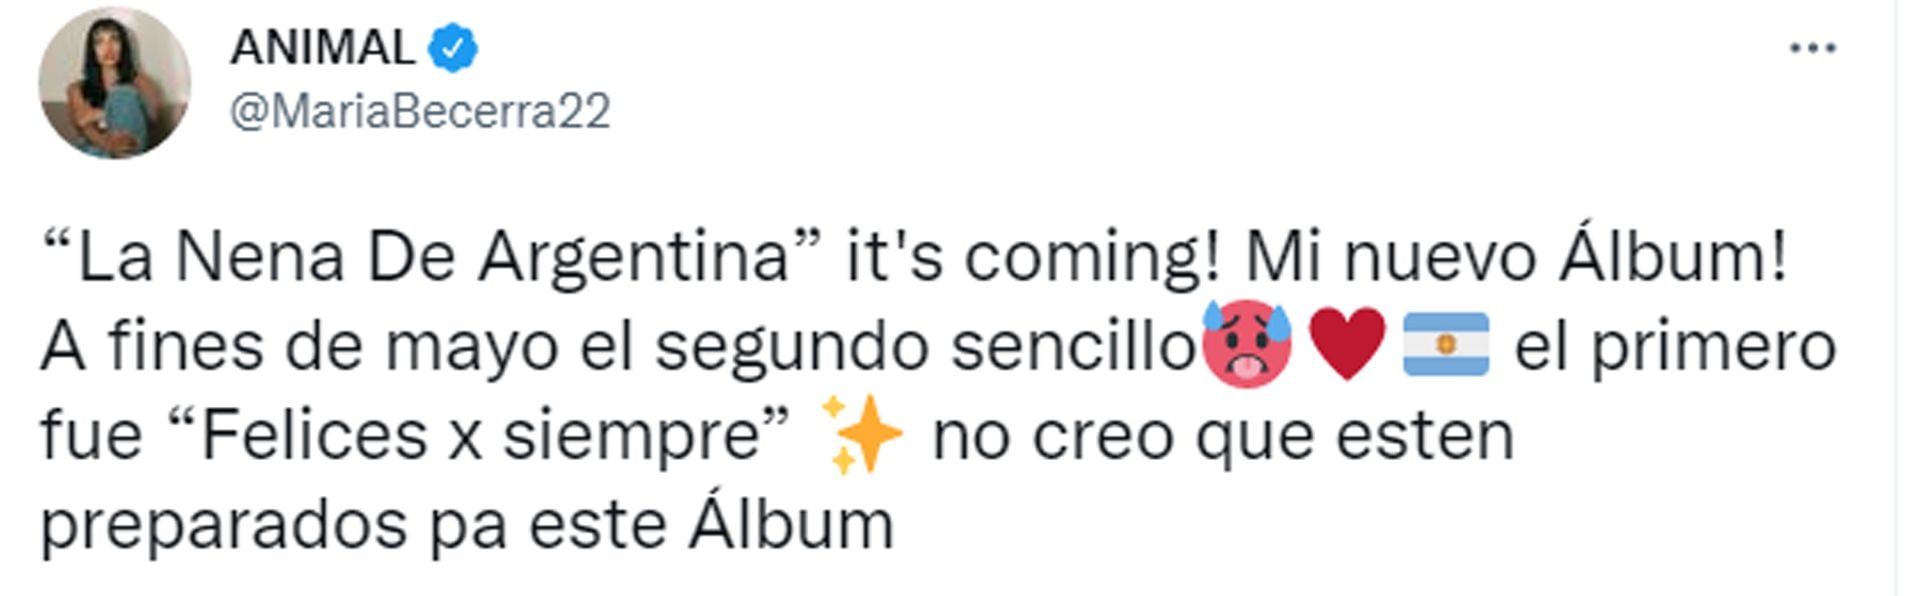 El tweet de María Becerra anunciando el nombre de su próximo disco: se va a llamar La Nena de Argentina